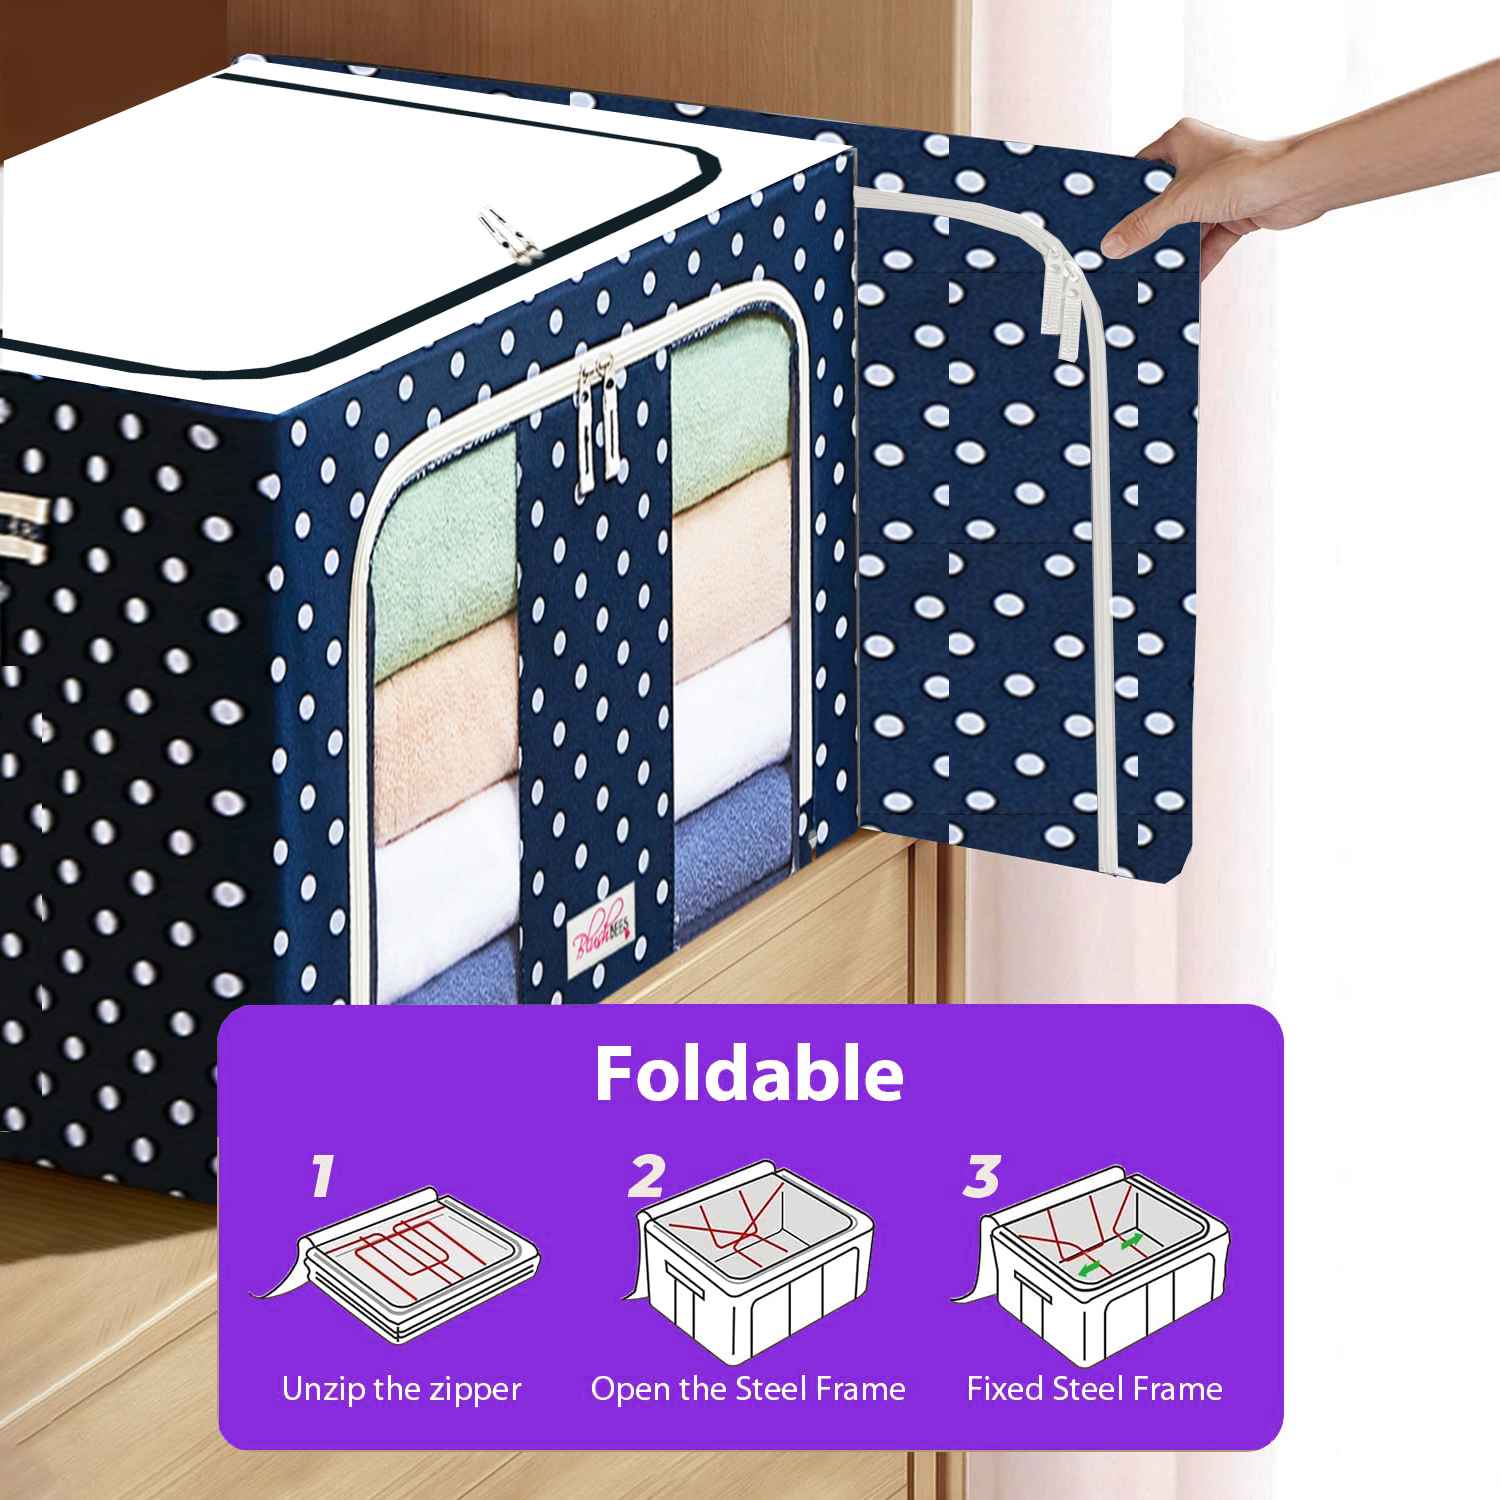 <tc>BlushBees® Cajas plegables de almacenamiento de tela Oxford para ropa/edredones/lino con soportes metálicos</tc>